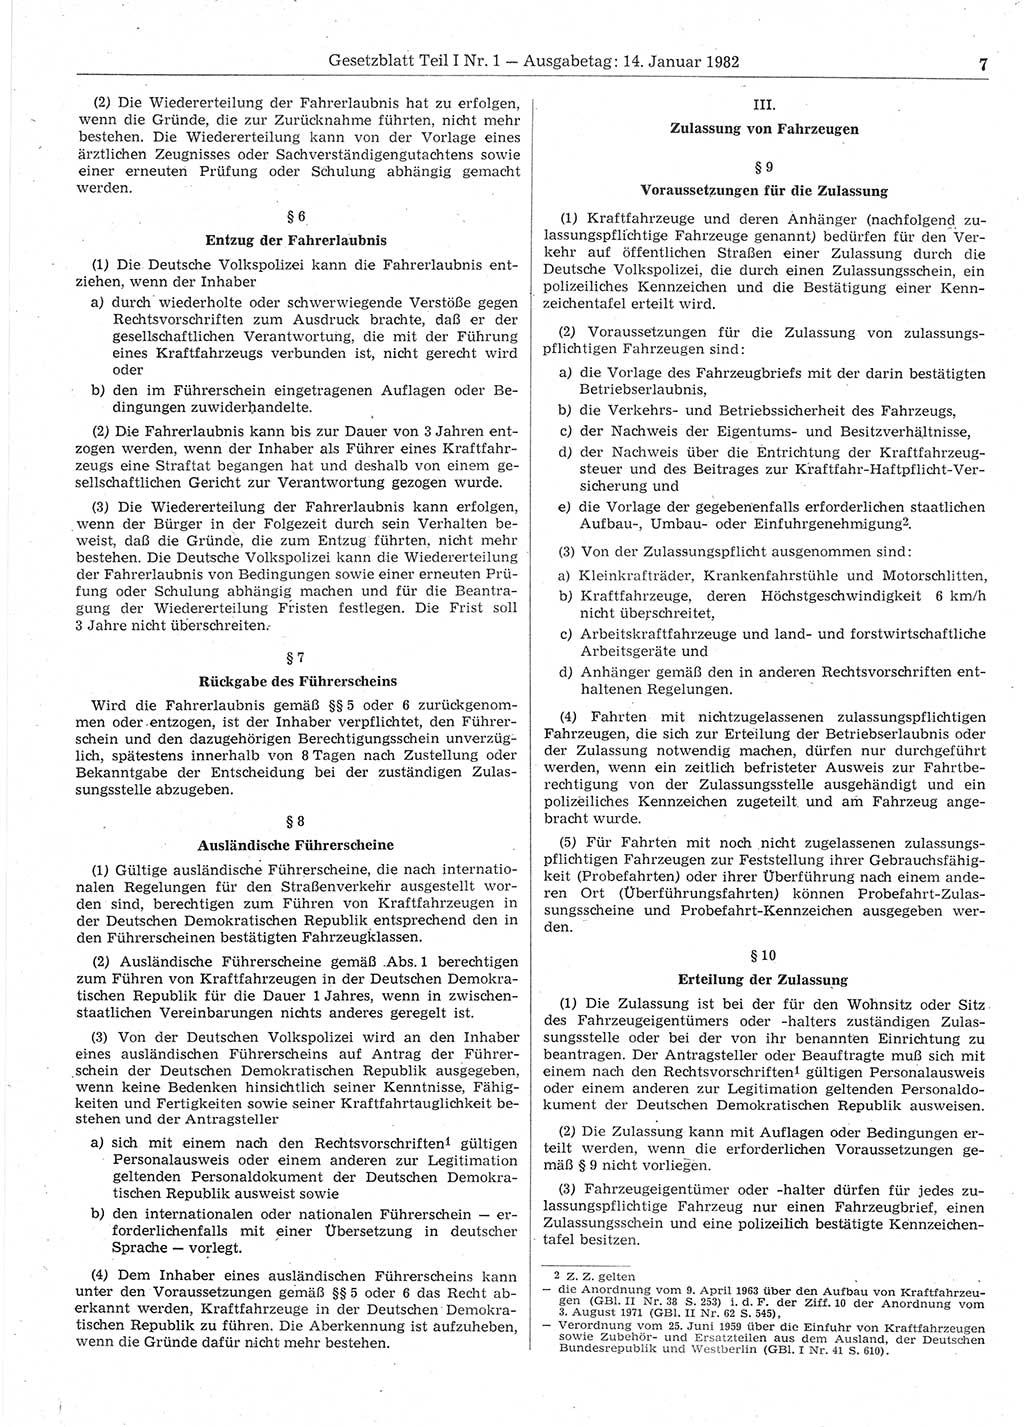 Gesetzblatt (GBl.) der Deutschen Demokratischen Republik (DDR) Teil Ⅰ 1982, Seite 7 (GBl. DDR Ⅰ 1982, S. 7)